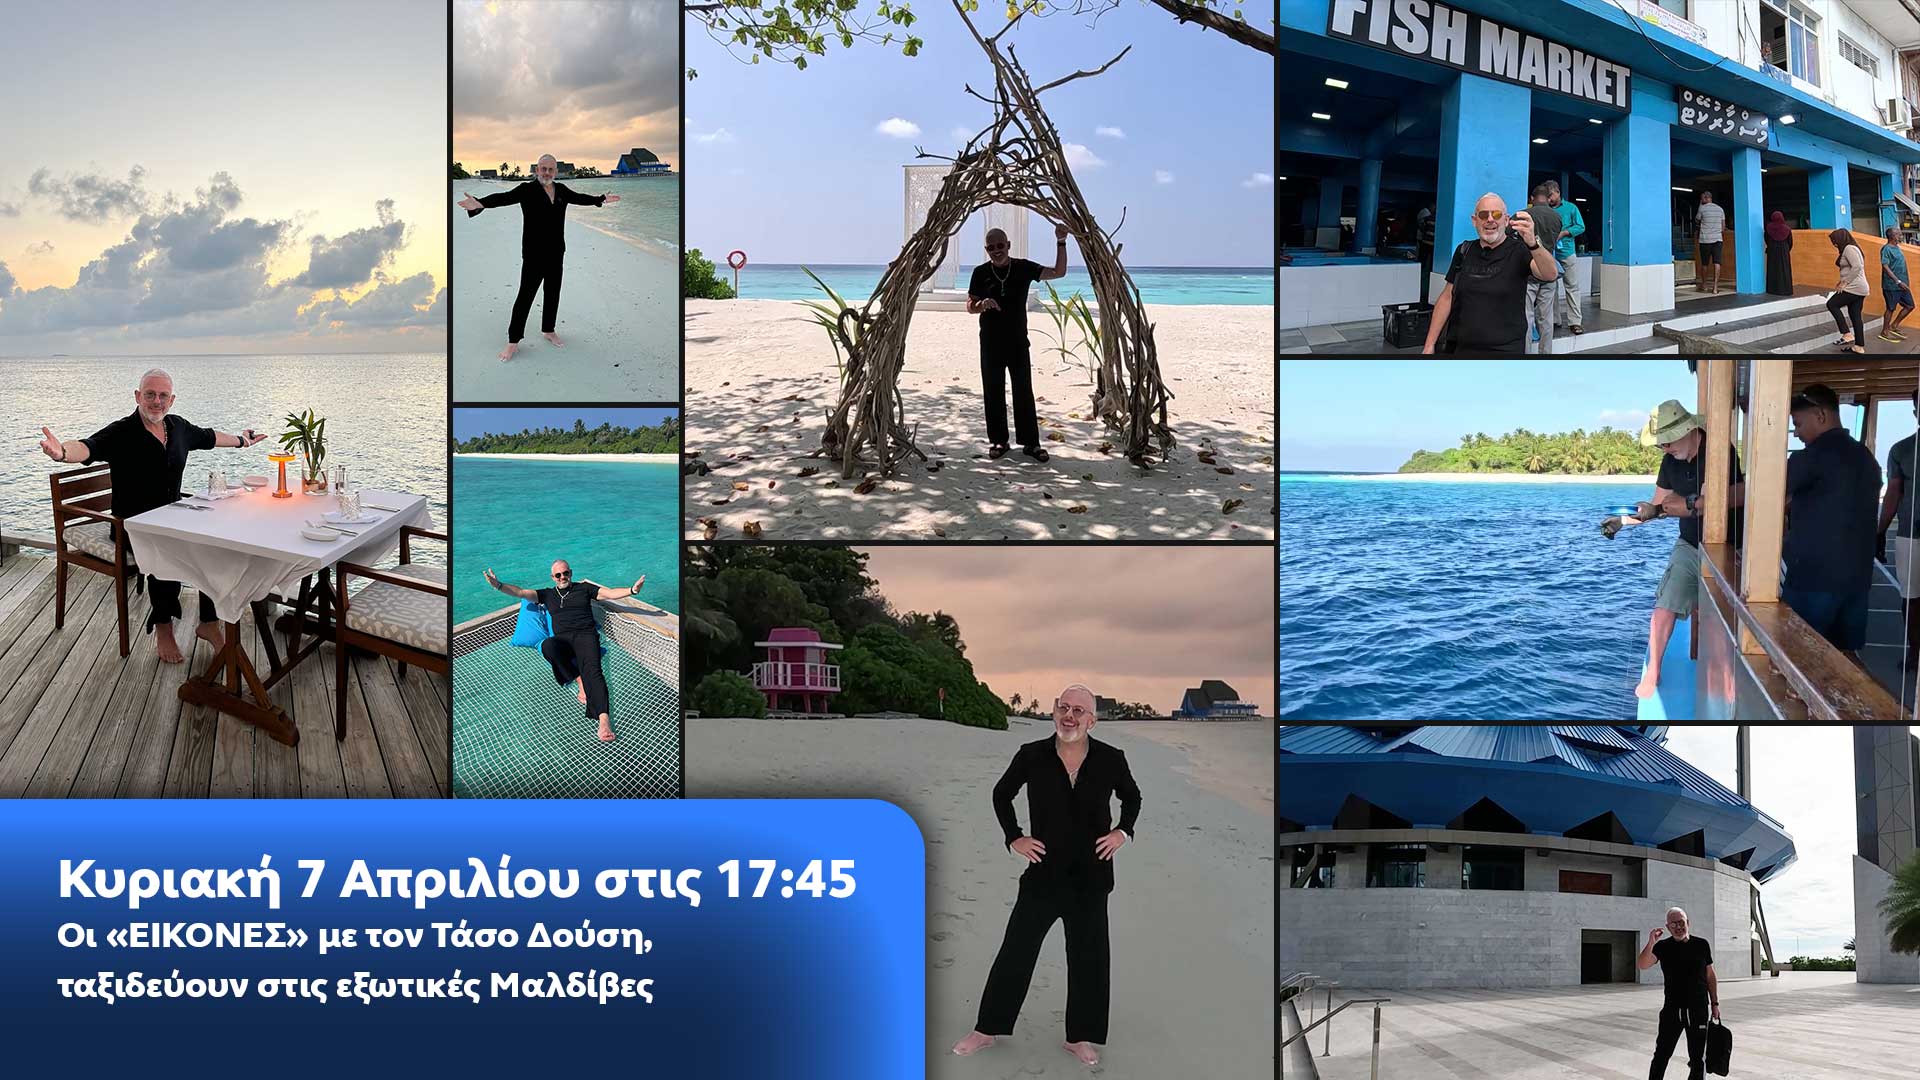 Δελτίο τύπου - Οι ΕΙΚΟΝΕΣ με τον Τάσο Δούση ταξιδεύουν στις εξωτικές Μαλδίβες